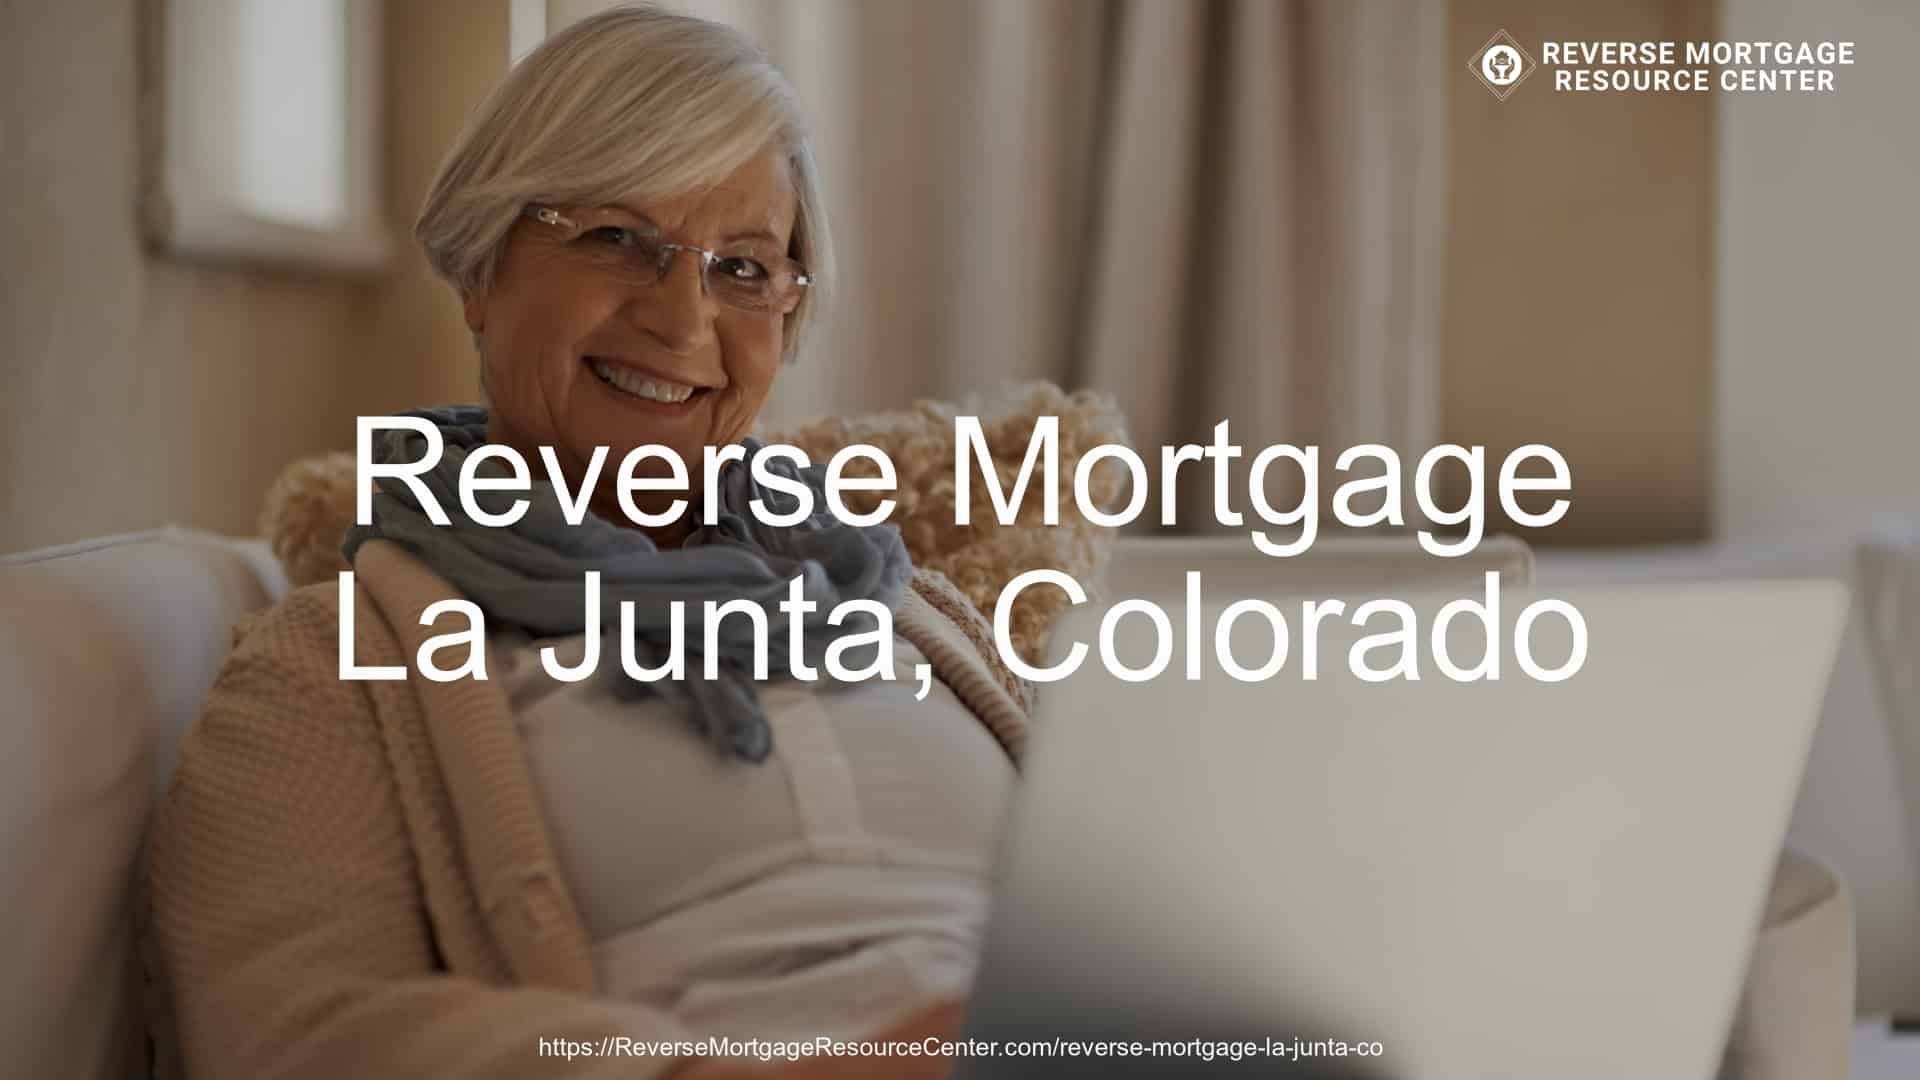 Reverse Mortgage Loans in La Junta Colorado